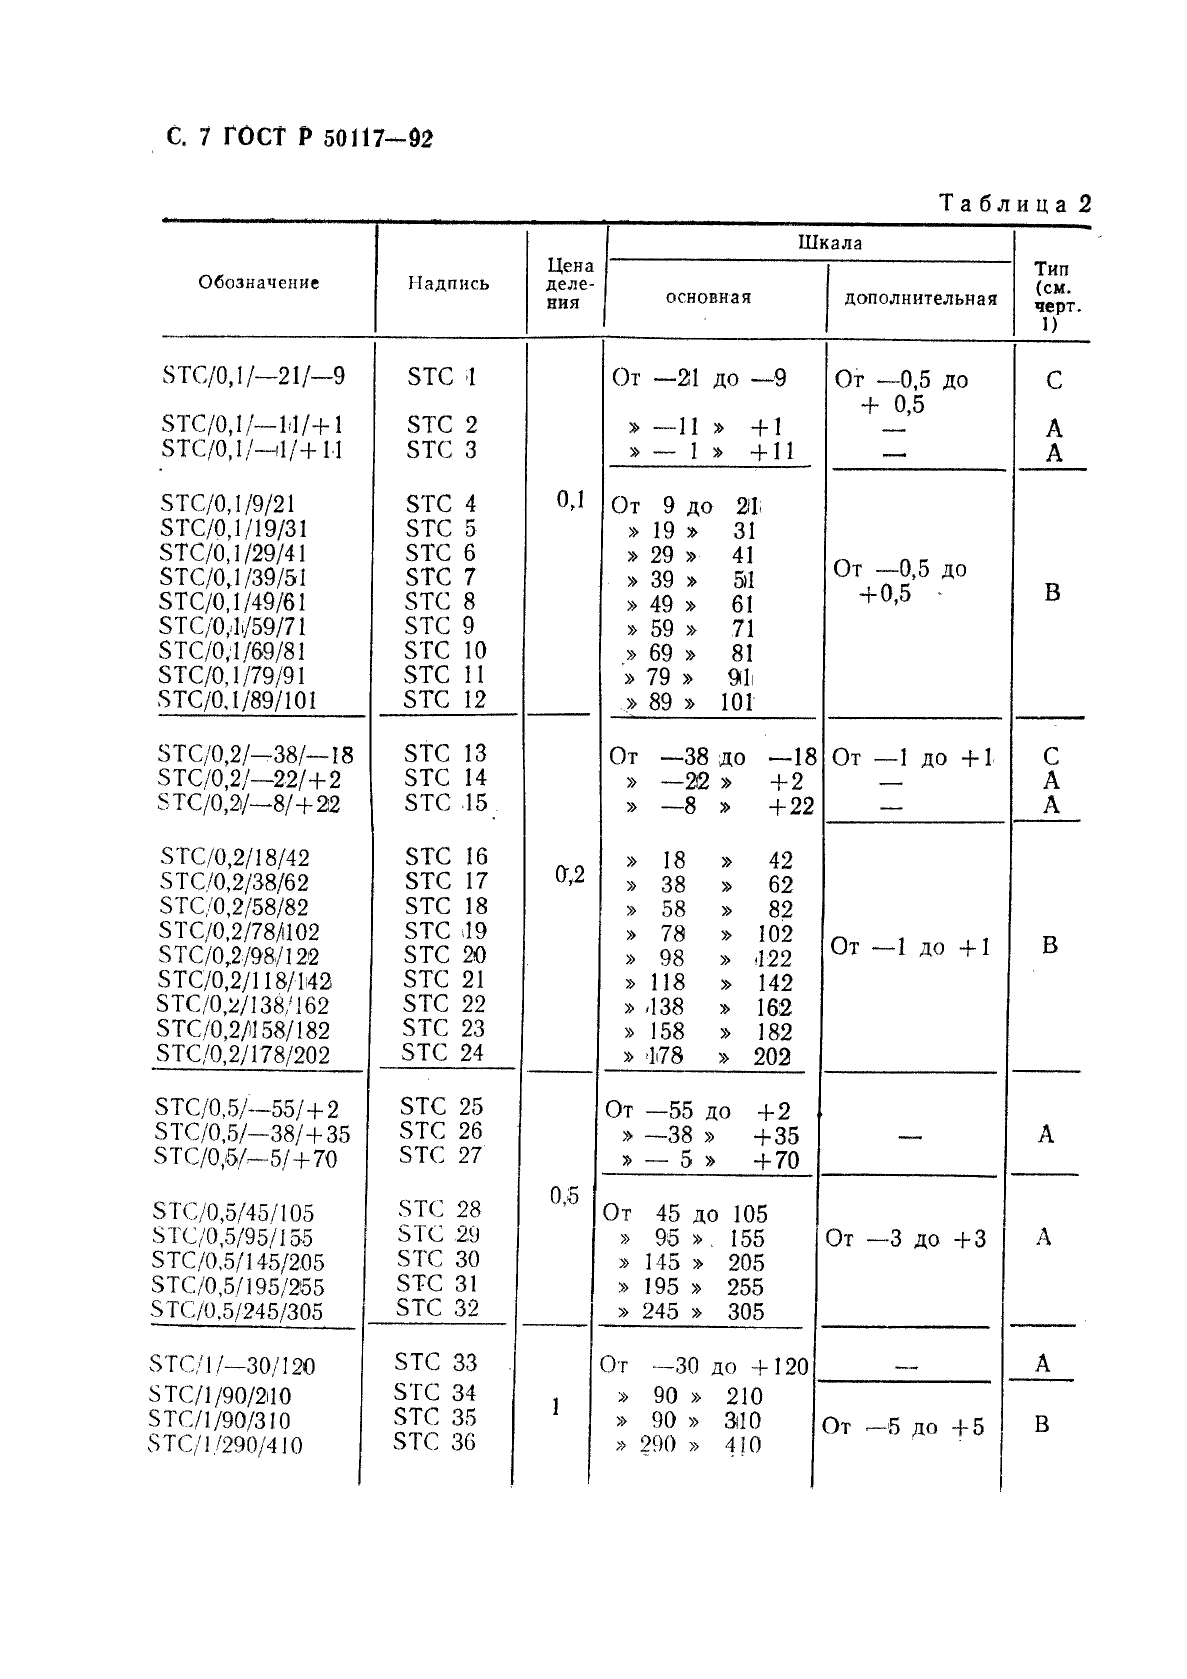   50117-92,  8.